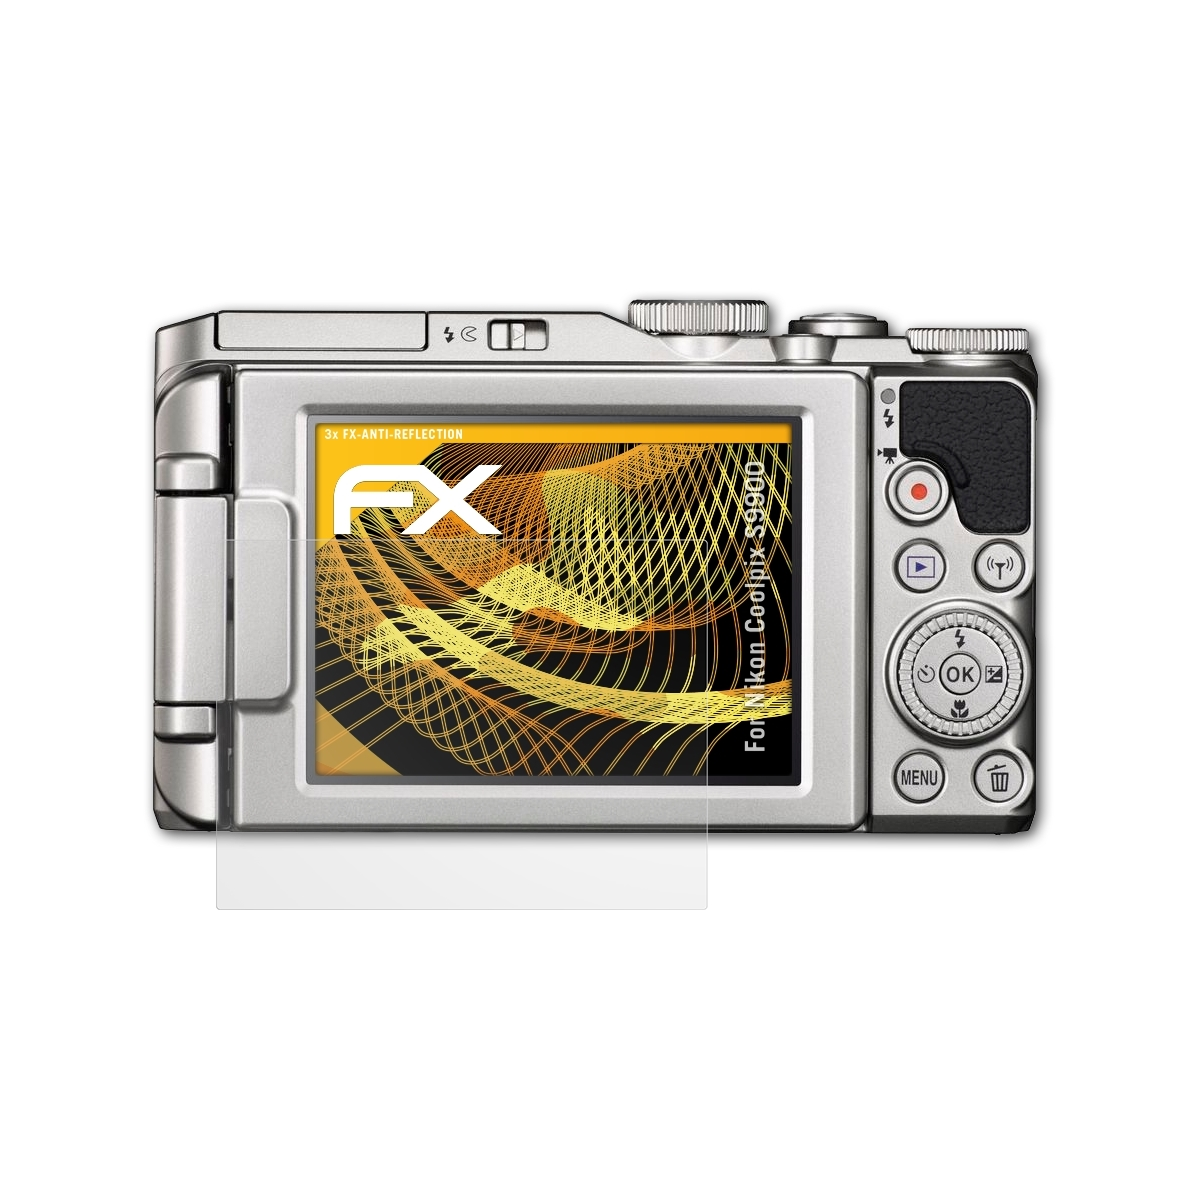 Displayschutz(für S9900) Coolpix Nikon ATFOLIX FX-Antireflex 3x